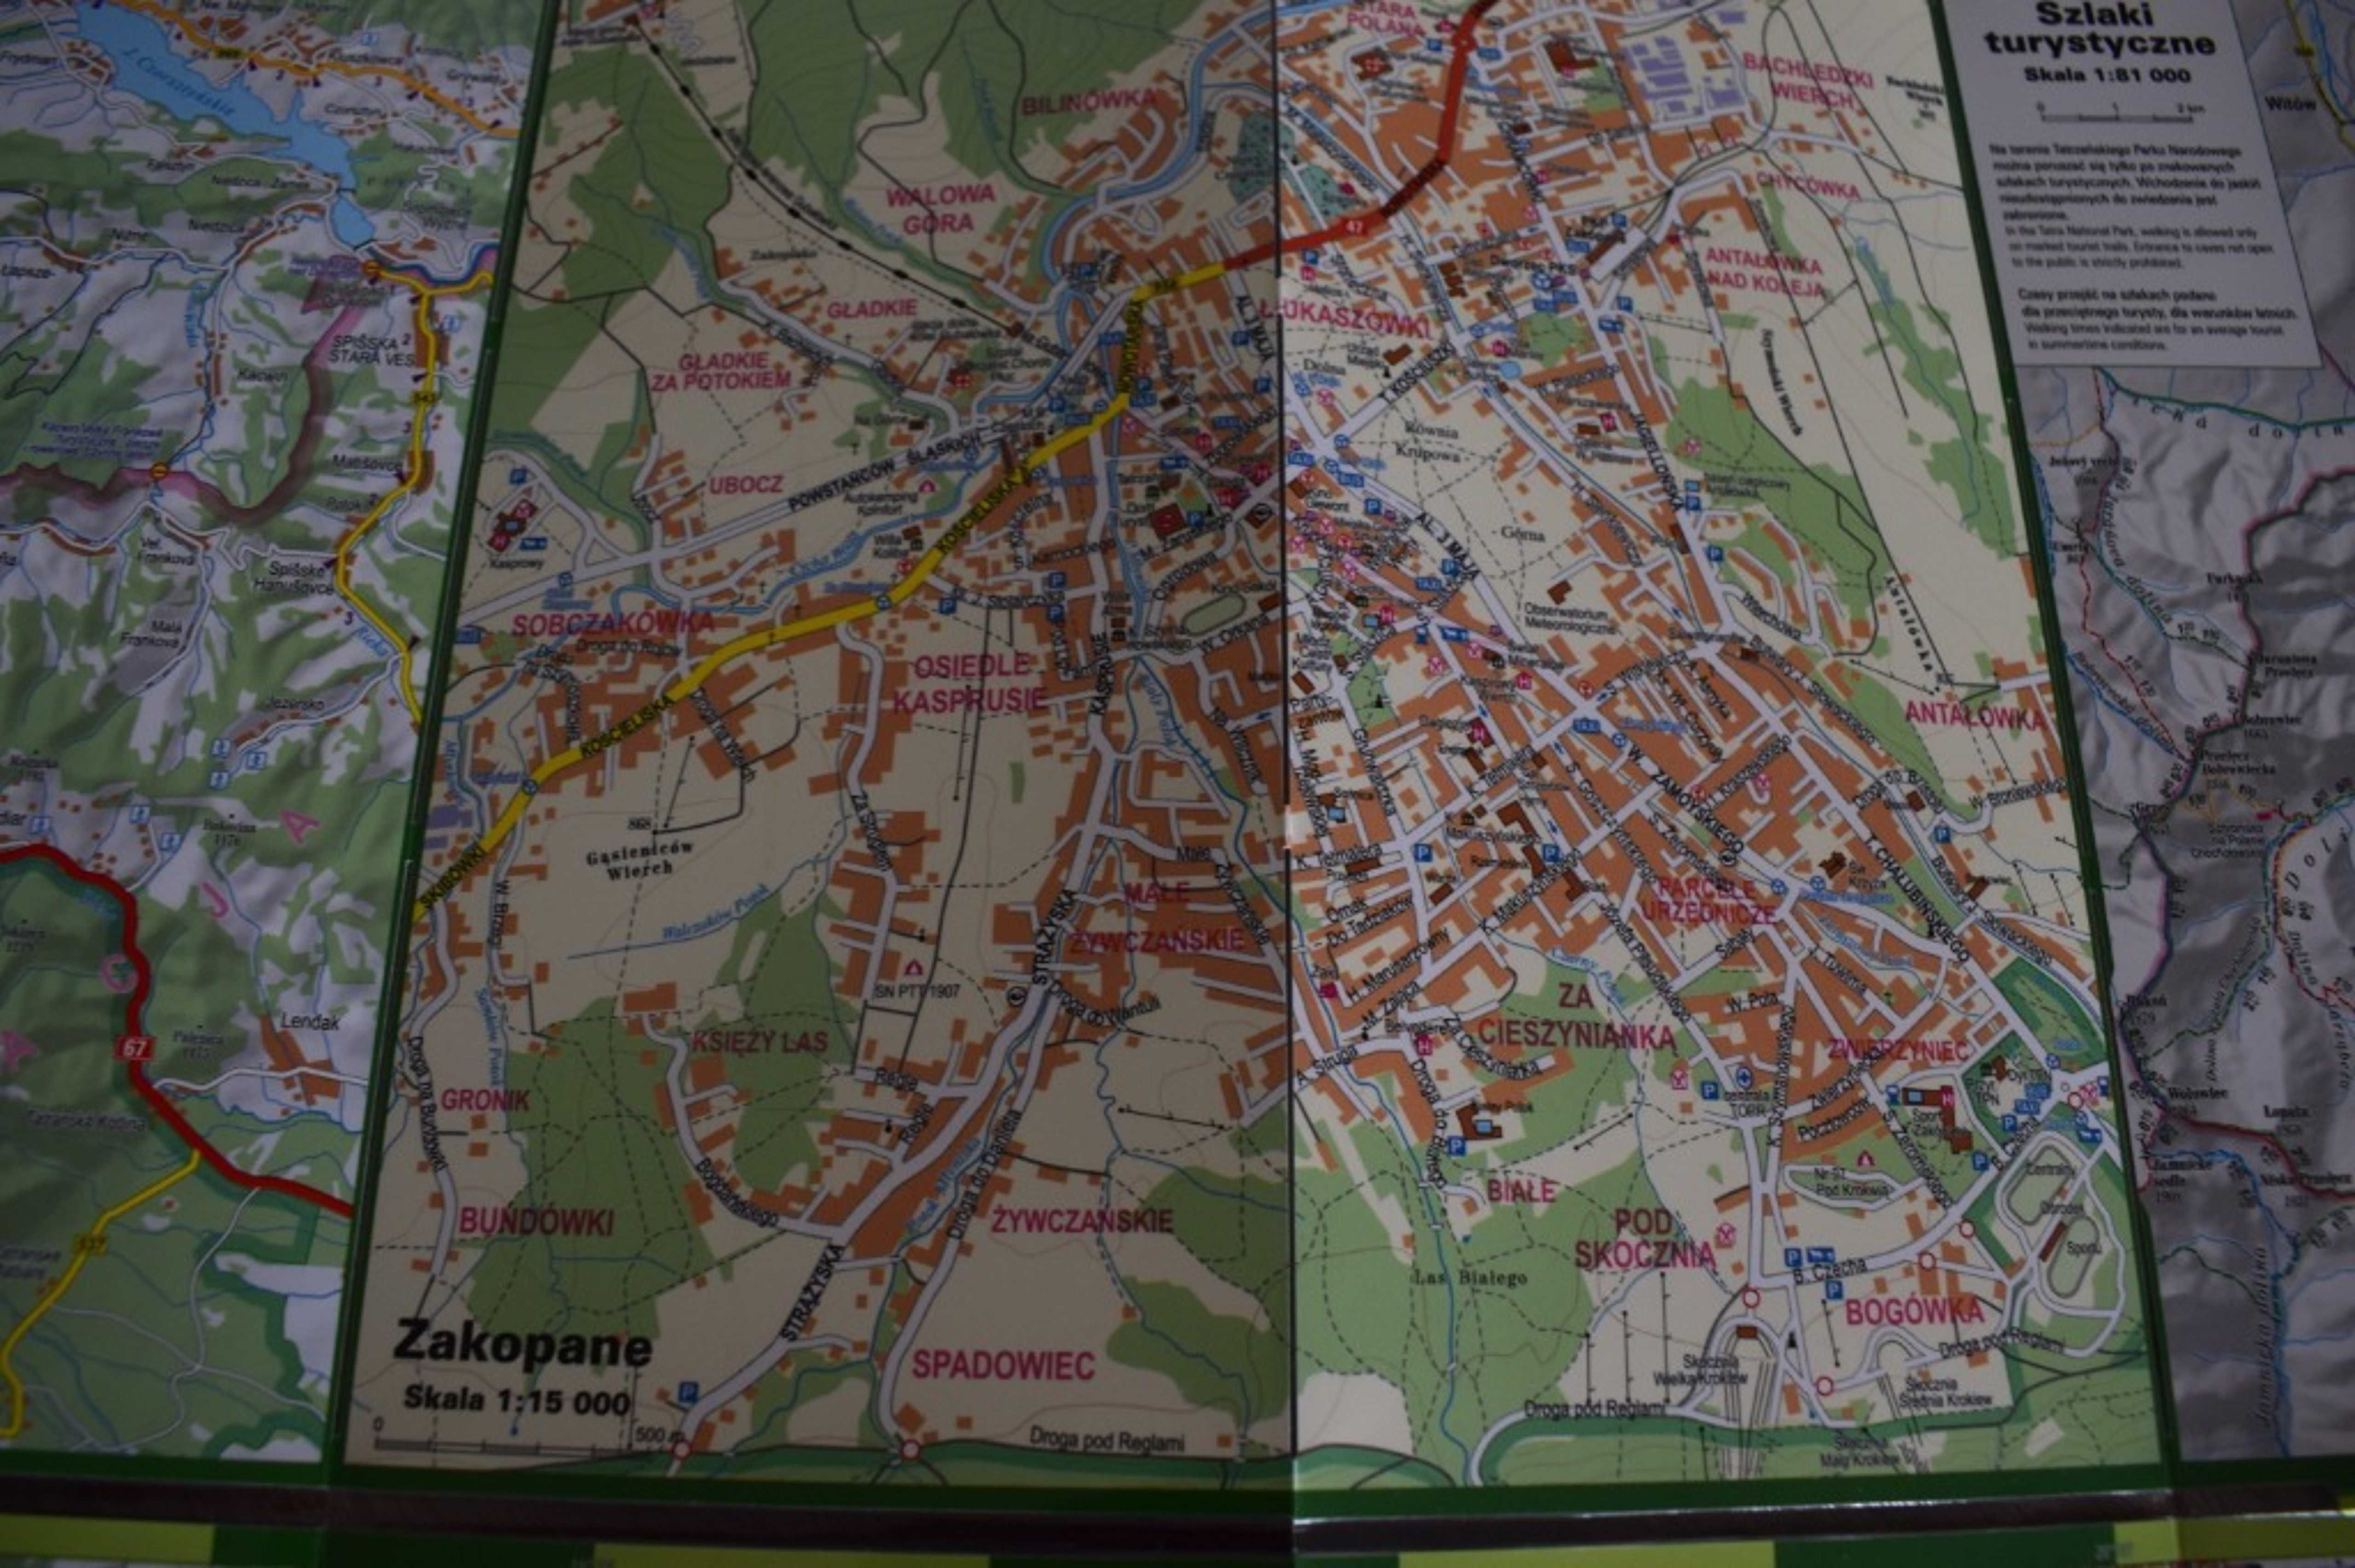 Mapa Tatr - Zakopane i okolice - wodoszczelna .